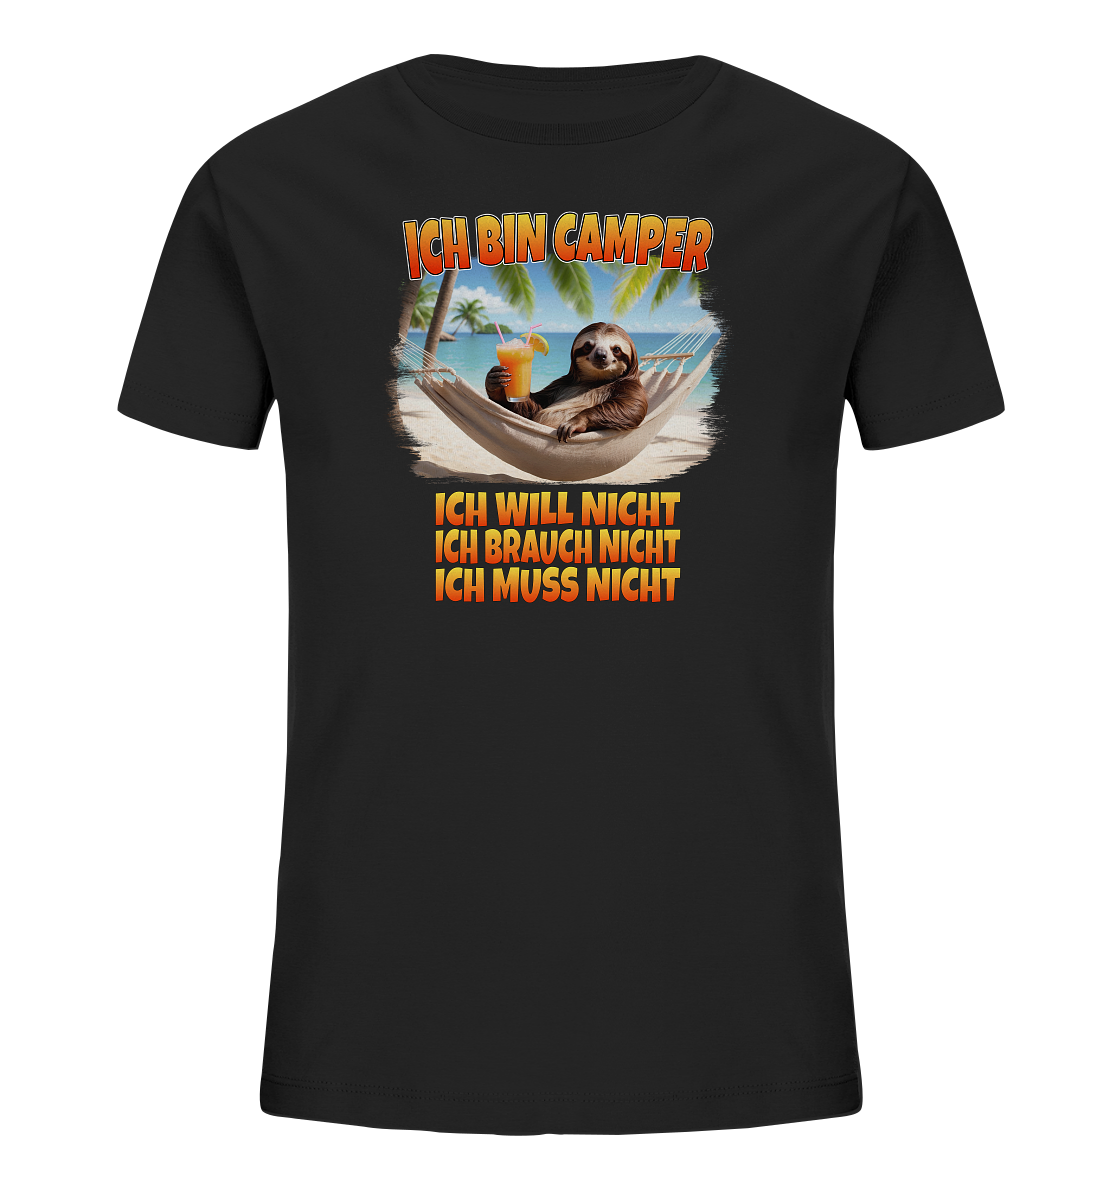 Ich bin Camper - ich will nicht, ich brauch nicht, ich muss nicht - Kids Organic Shirt